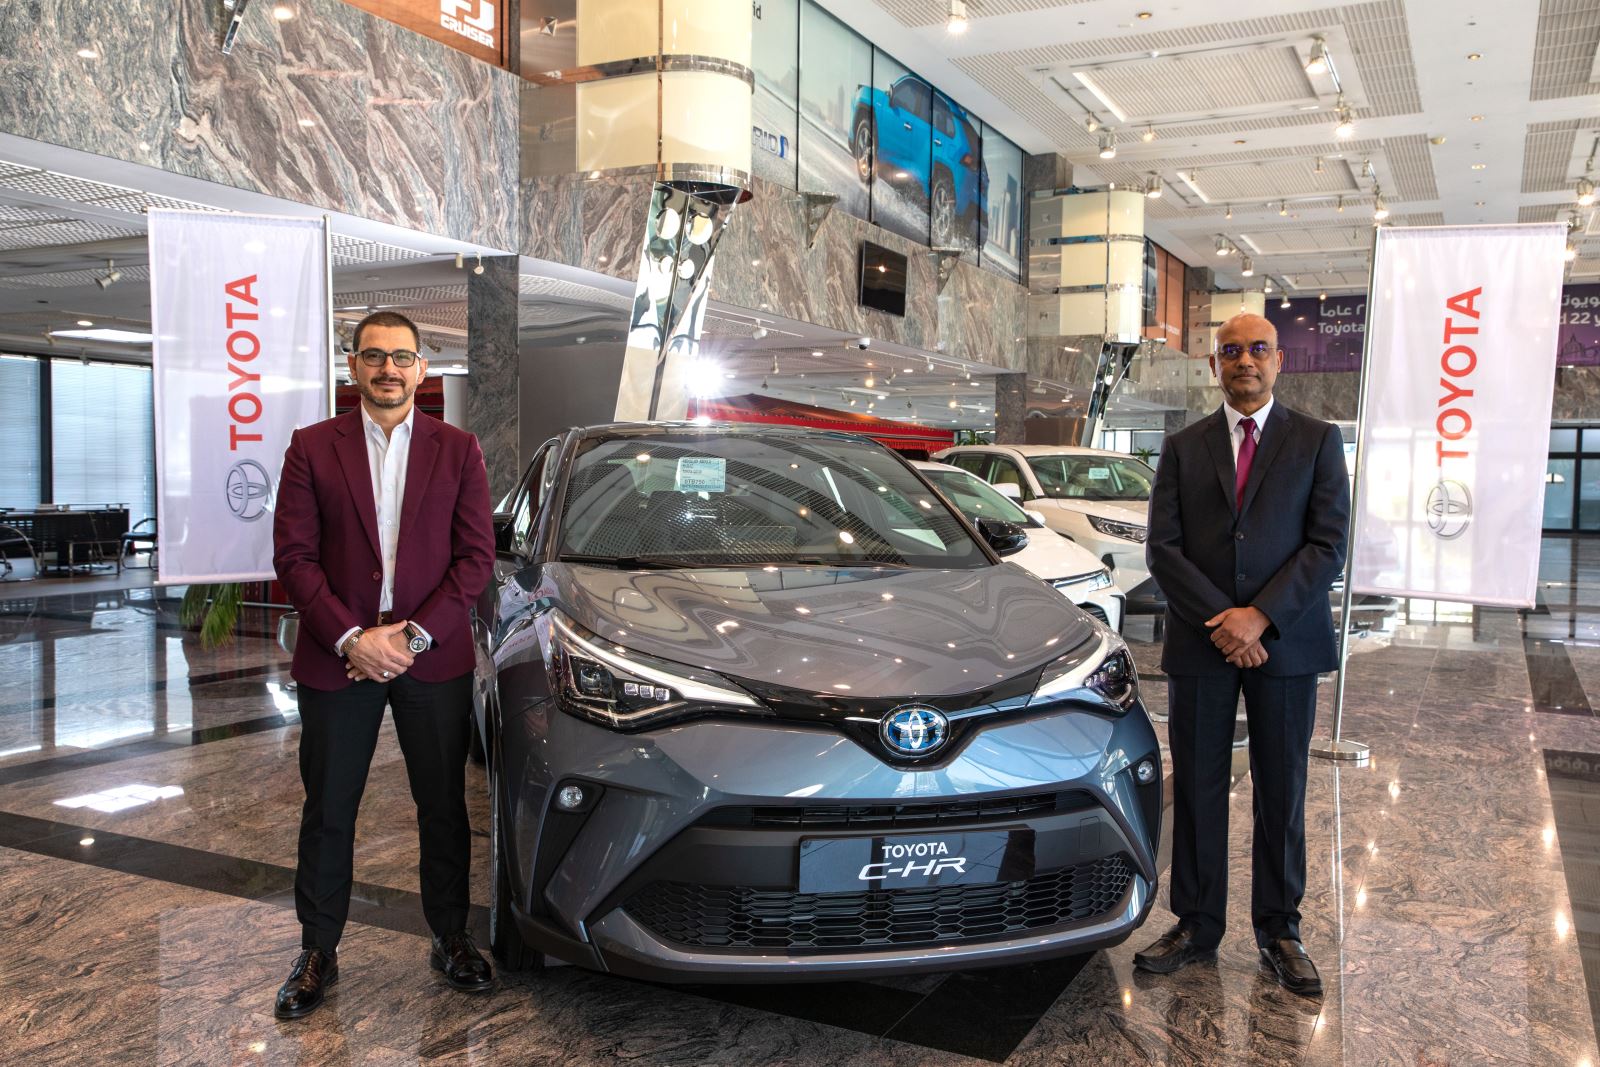 شركة عبد الله عبد الغنى وإخوانه تحتفل بأول تدشين رقمى من خلال اطلاق السيارة الجديدة كليا تويوتا C-HR 2020 الهايبرد